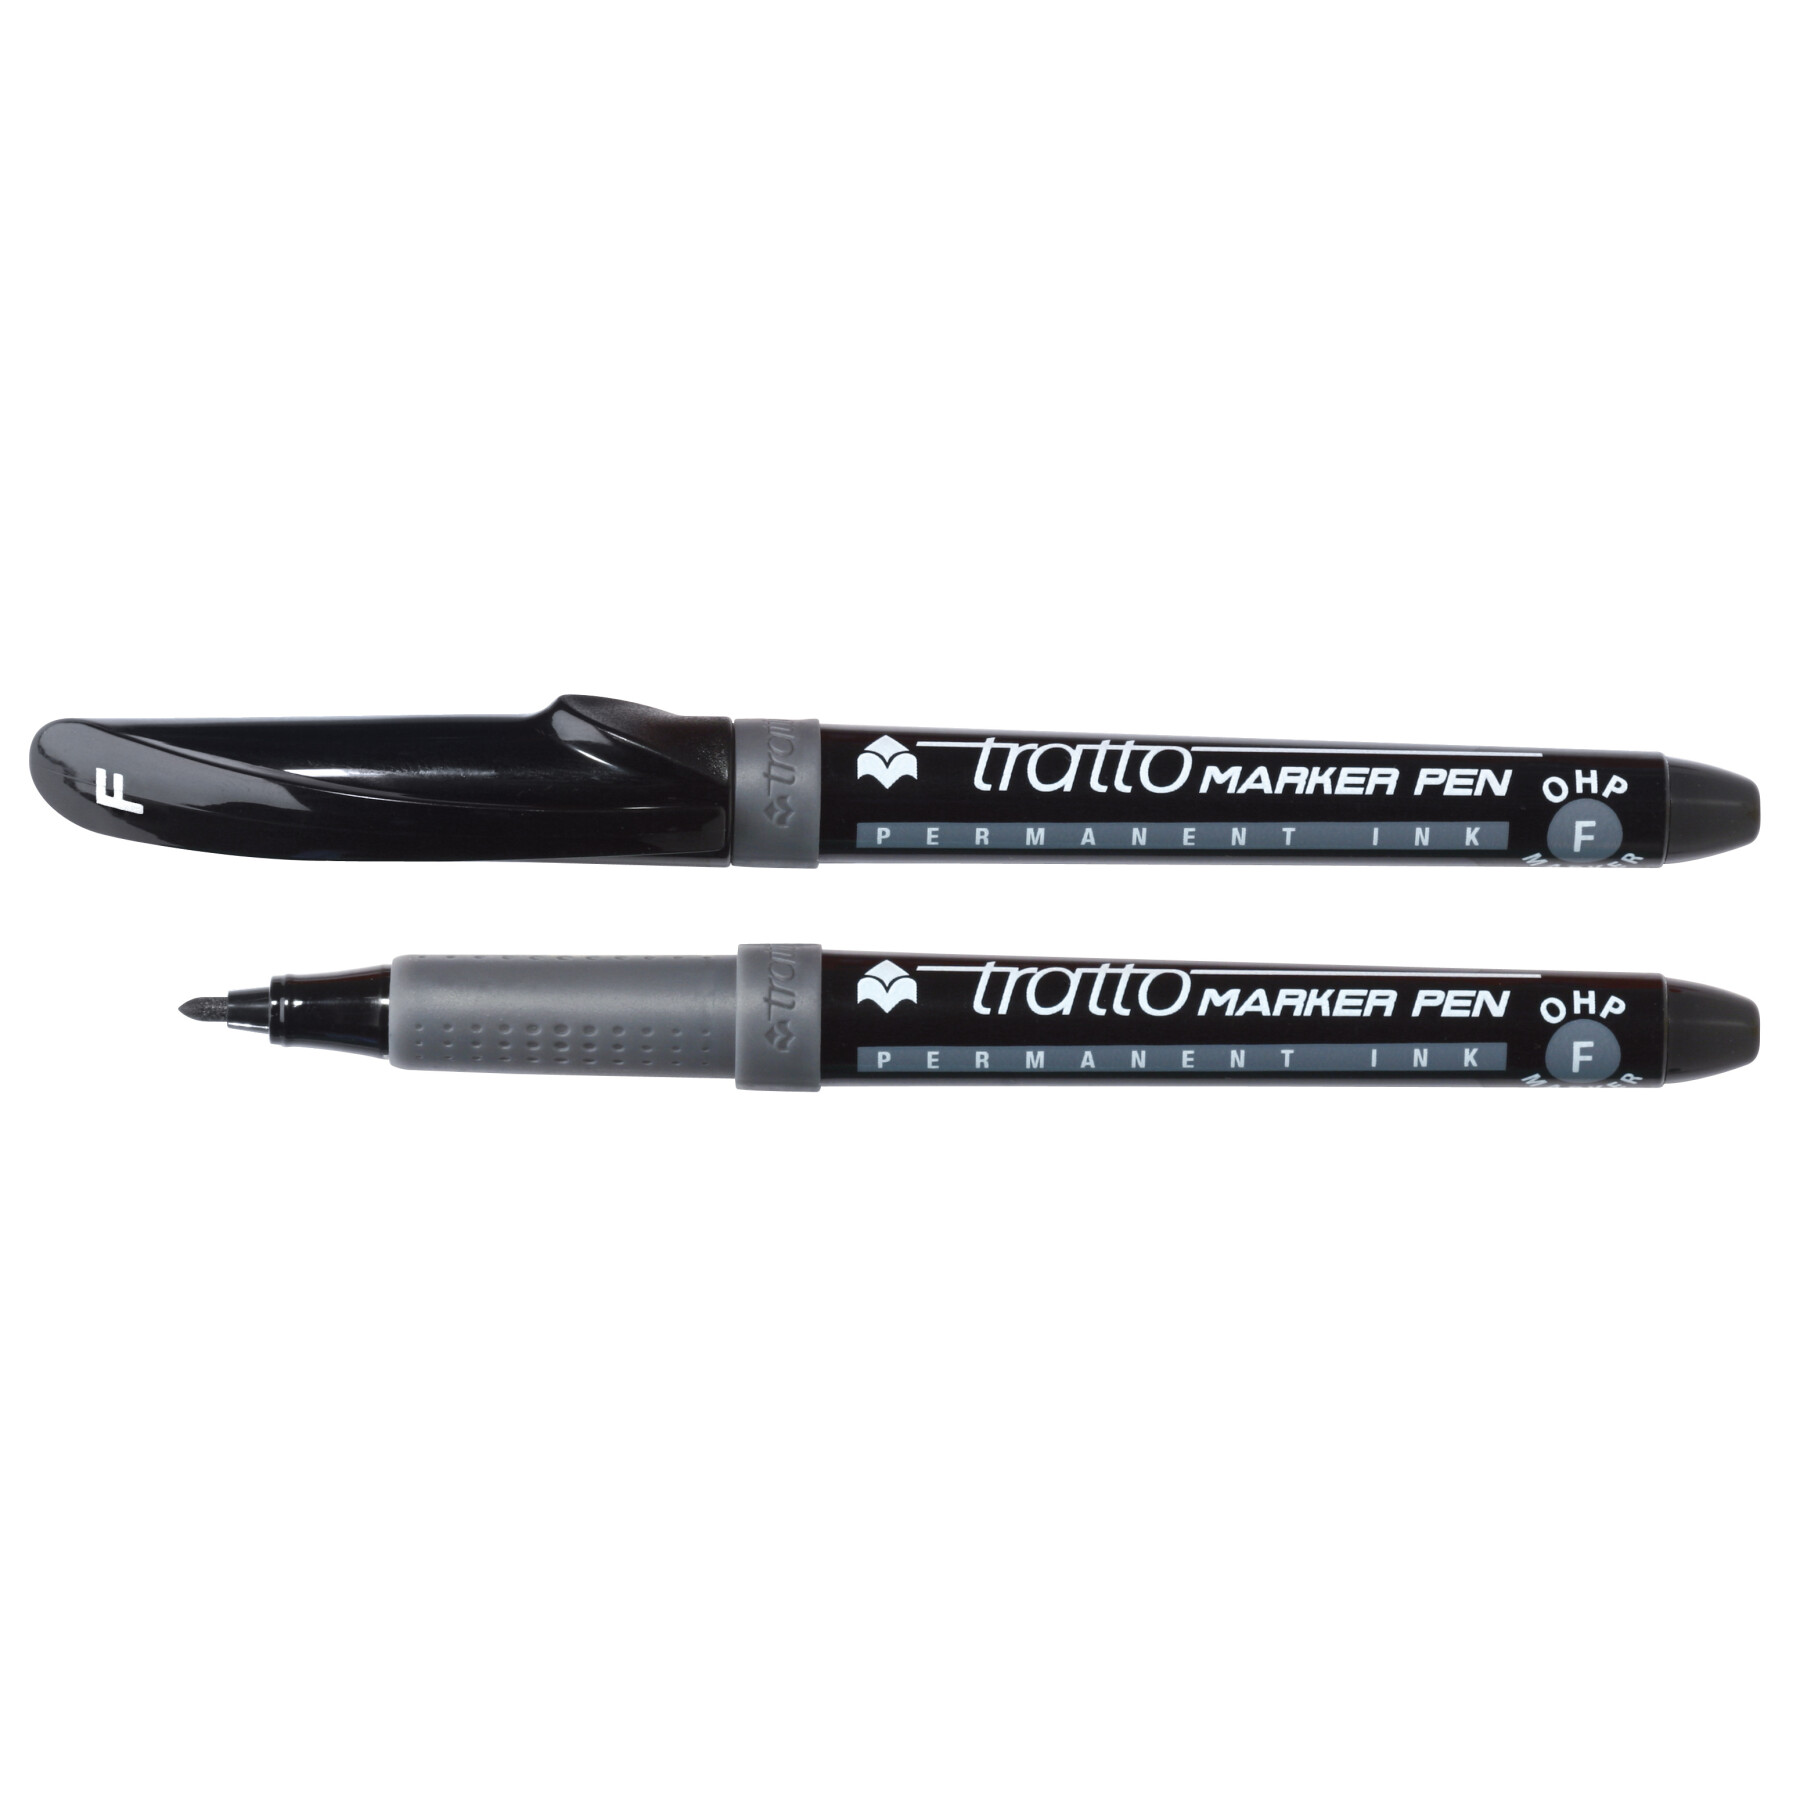 Tratto marker pen ohp - marcatore permanente confezione 2 pz - nero - 